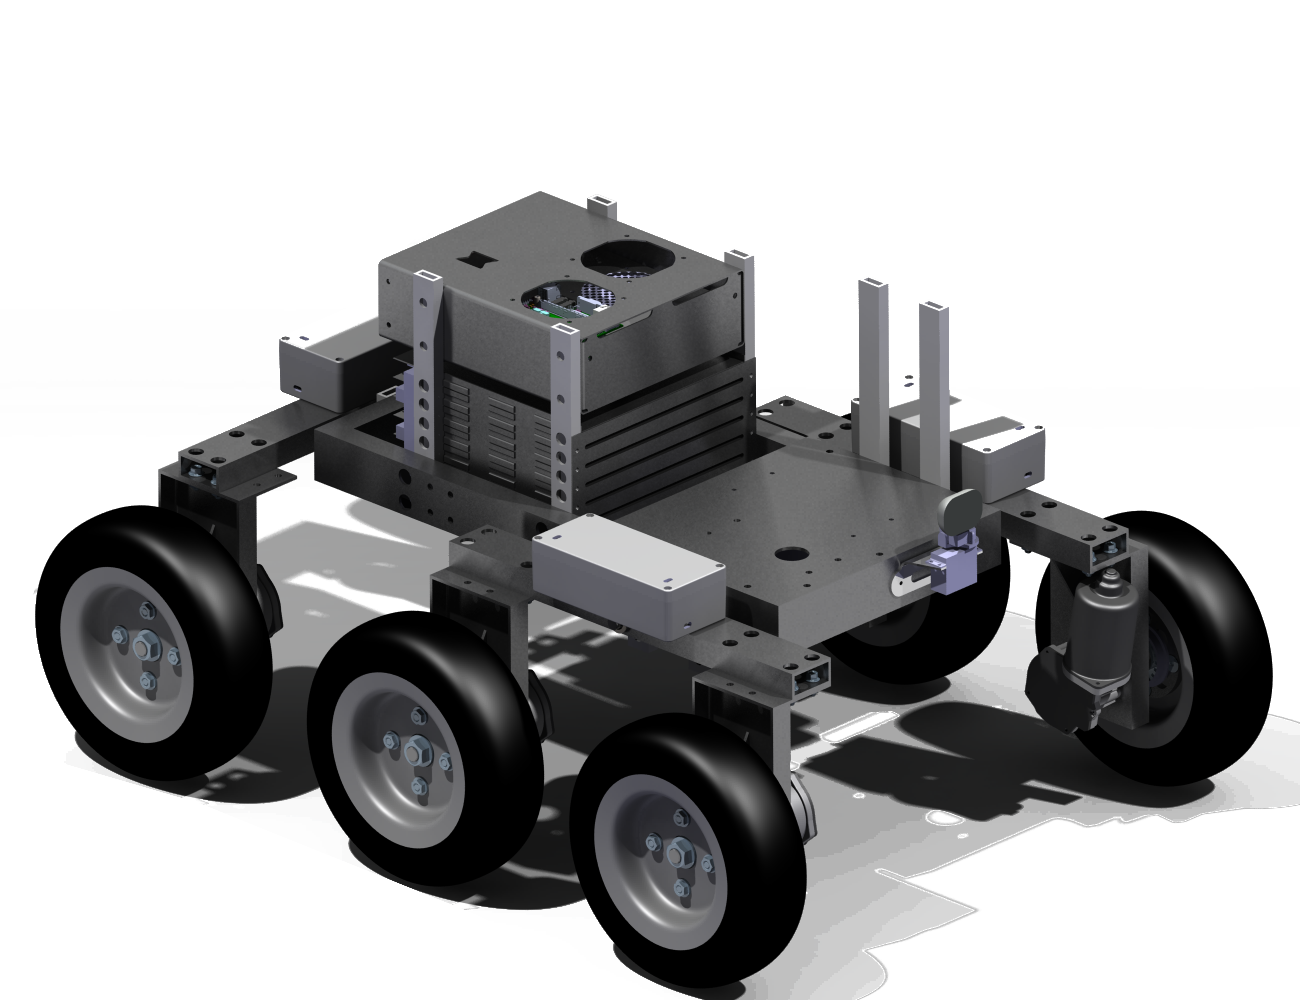 scaar rover CAD